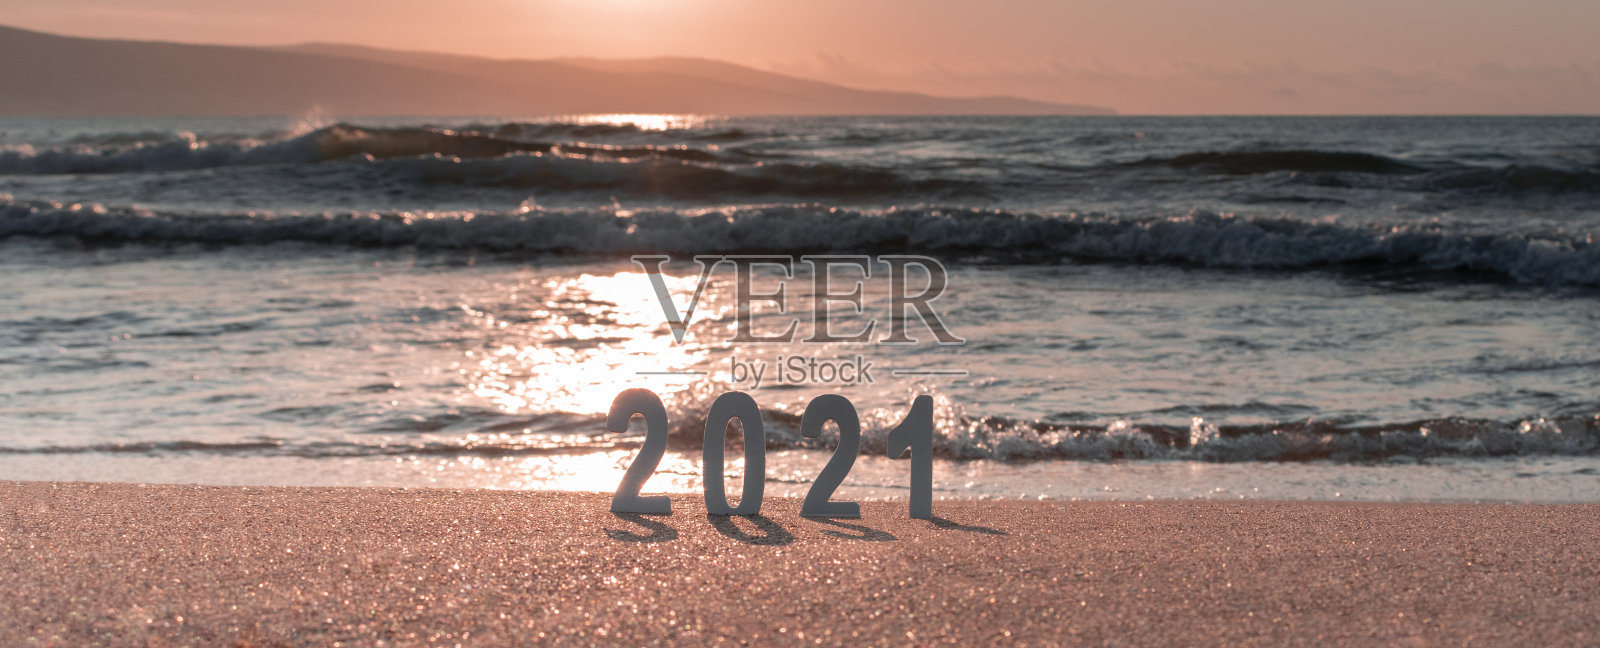 数字2021在美丽的海洋日落的自然模糊背景。新年的愿景，梦想，目标理念。在海滩上庆祝新年快乐。横幅，选择性焦点，复制空间照片摄影图片